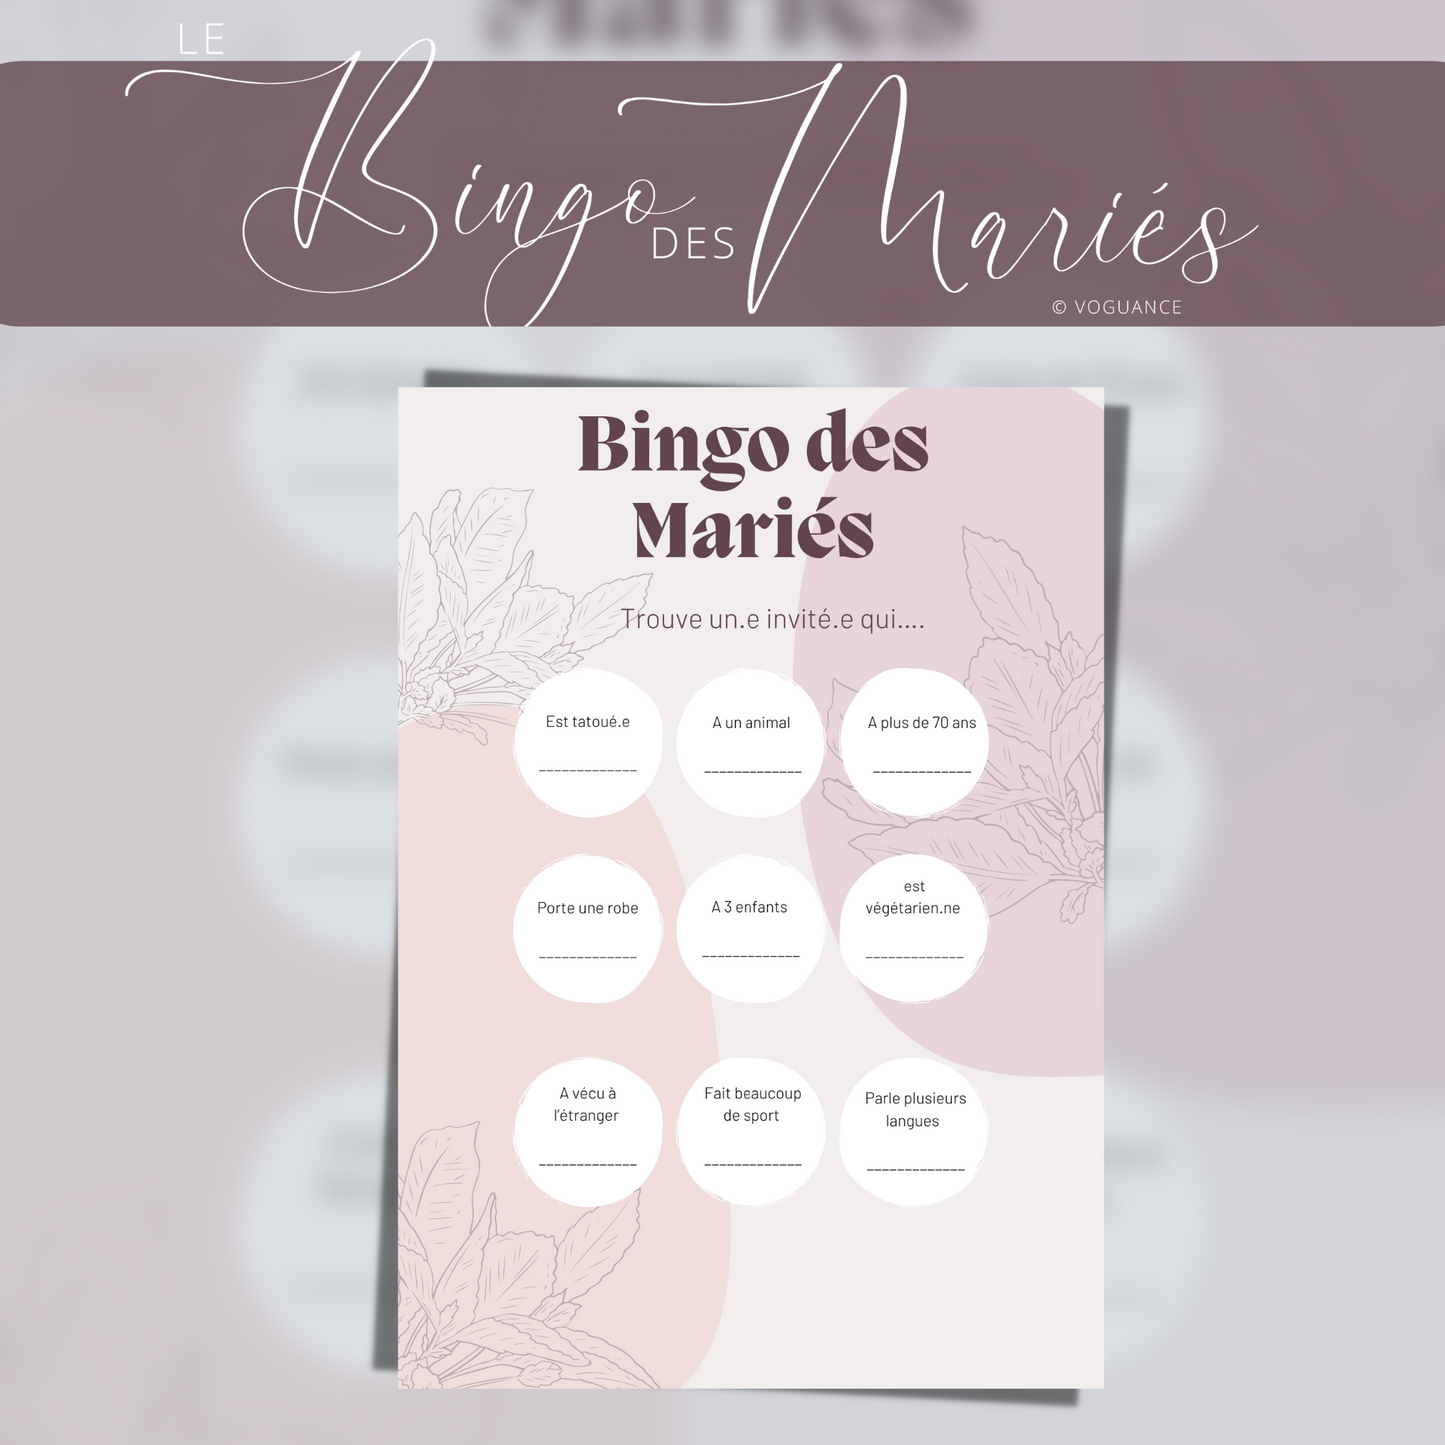 Jeux de Mariage: Bingo des mariés format A5 - Premium  de voguance - Seulement €5.50! J'achète maintenant voguance